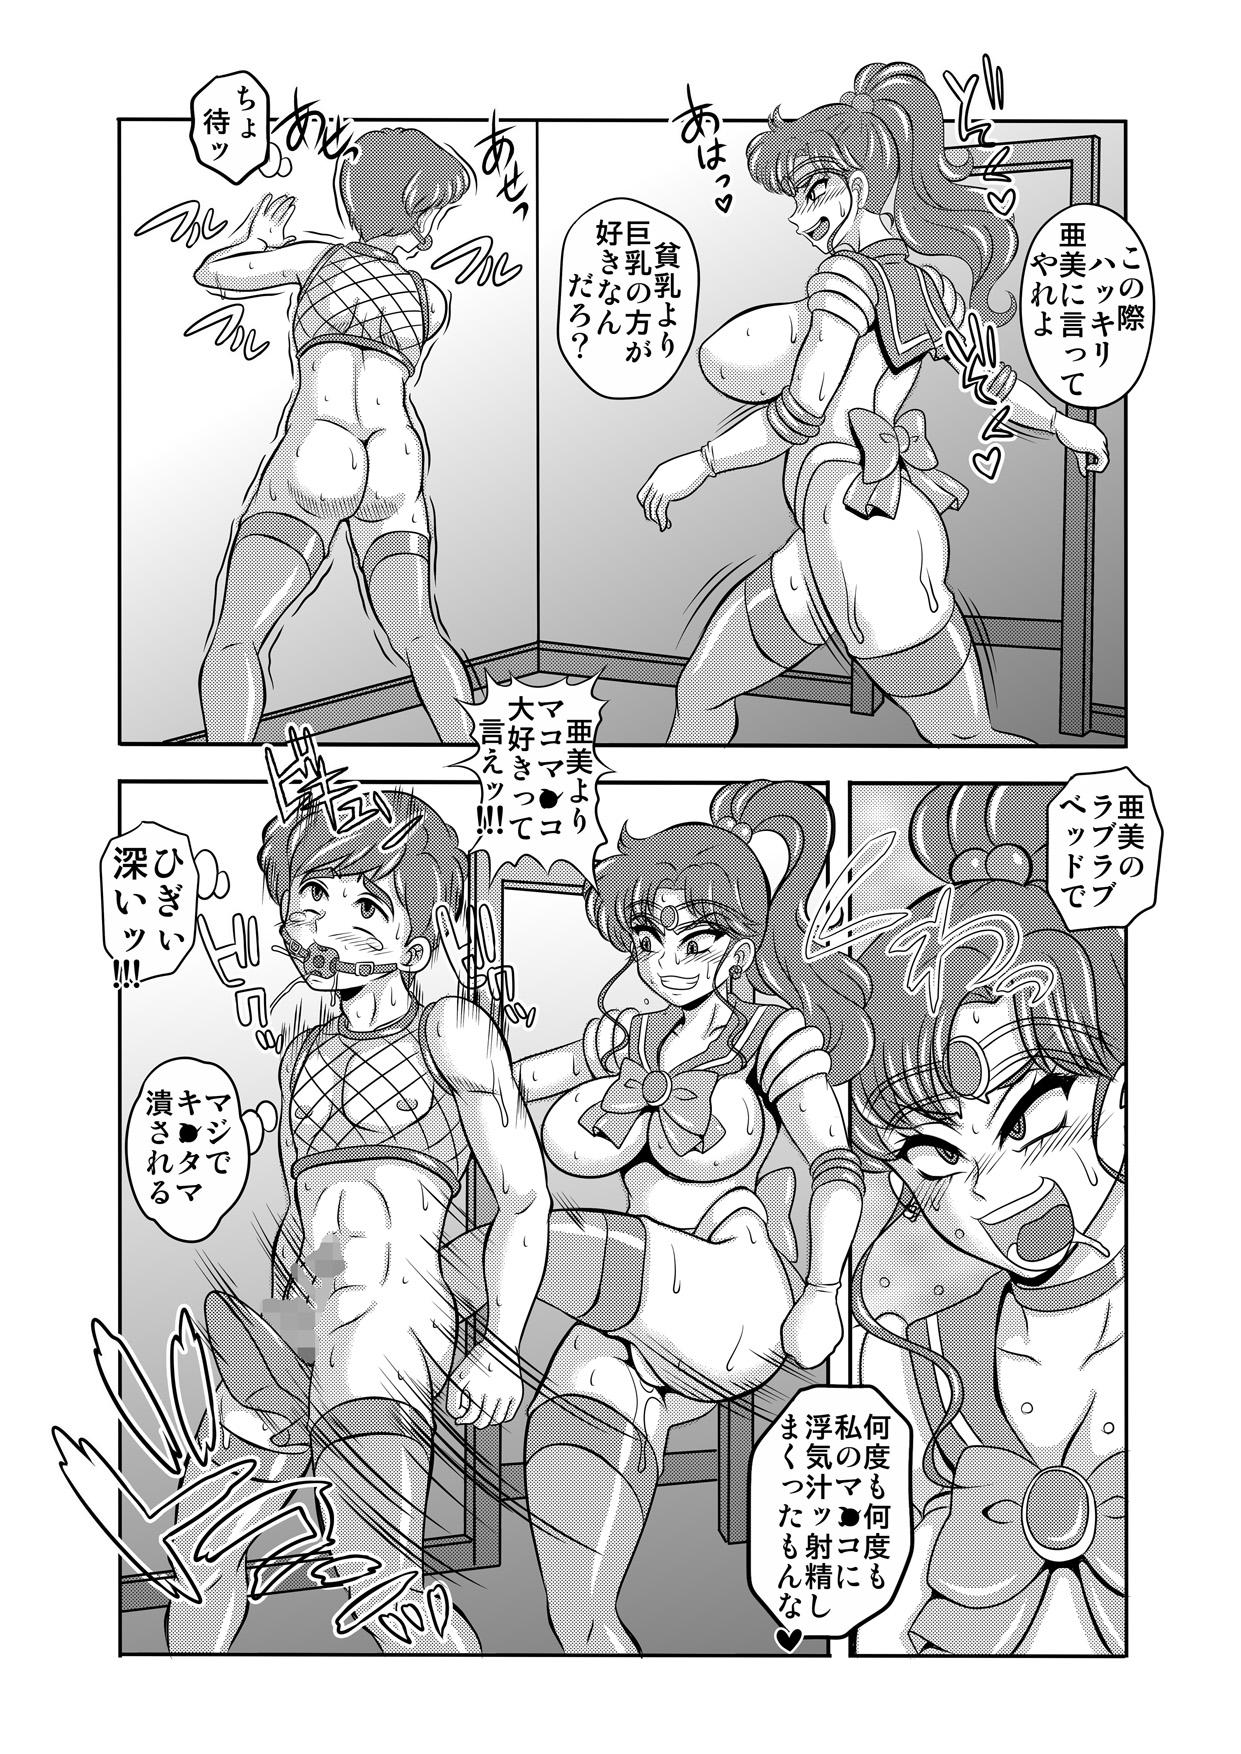 Linda Netori Netorare Toshiue Cosplayer-tachi no Yuuwaku 06 - Sailor moon Nudist - Page 12